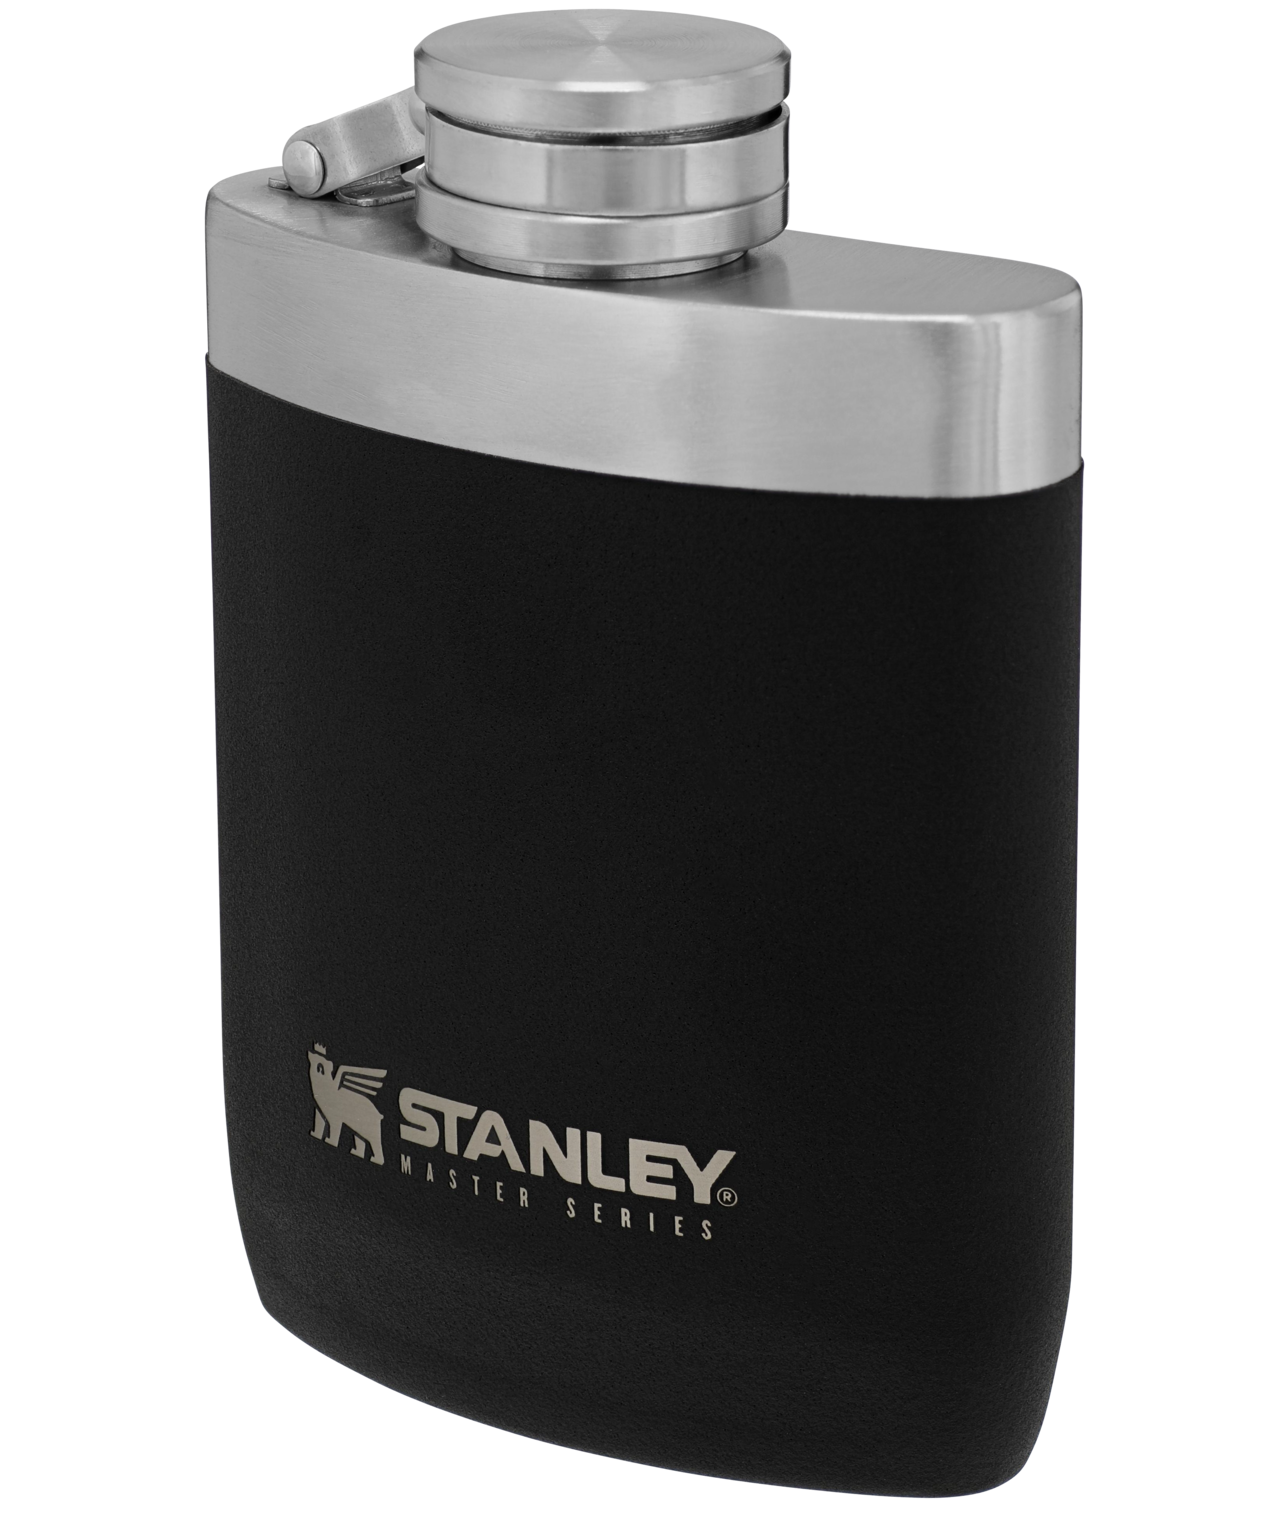 Stanley Master Vacuum Bottle, 1.4 quart